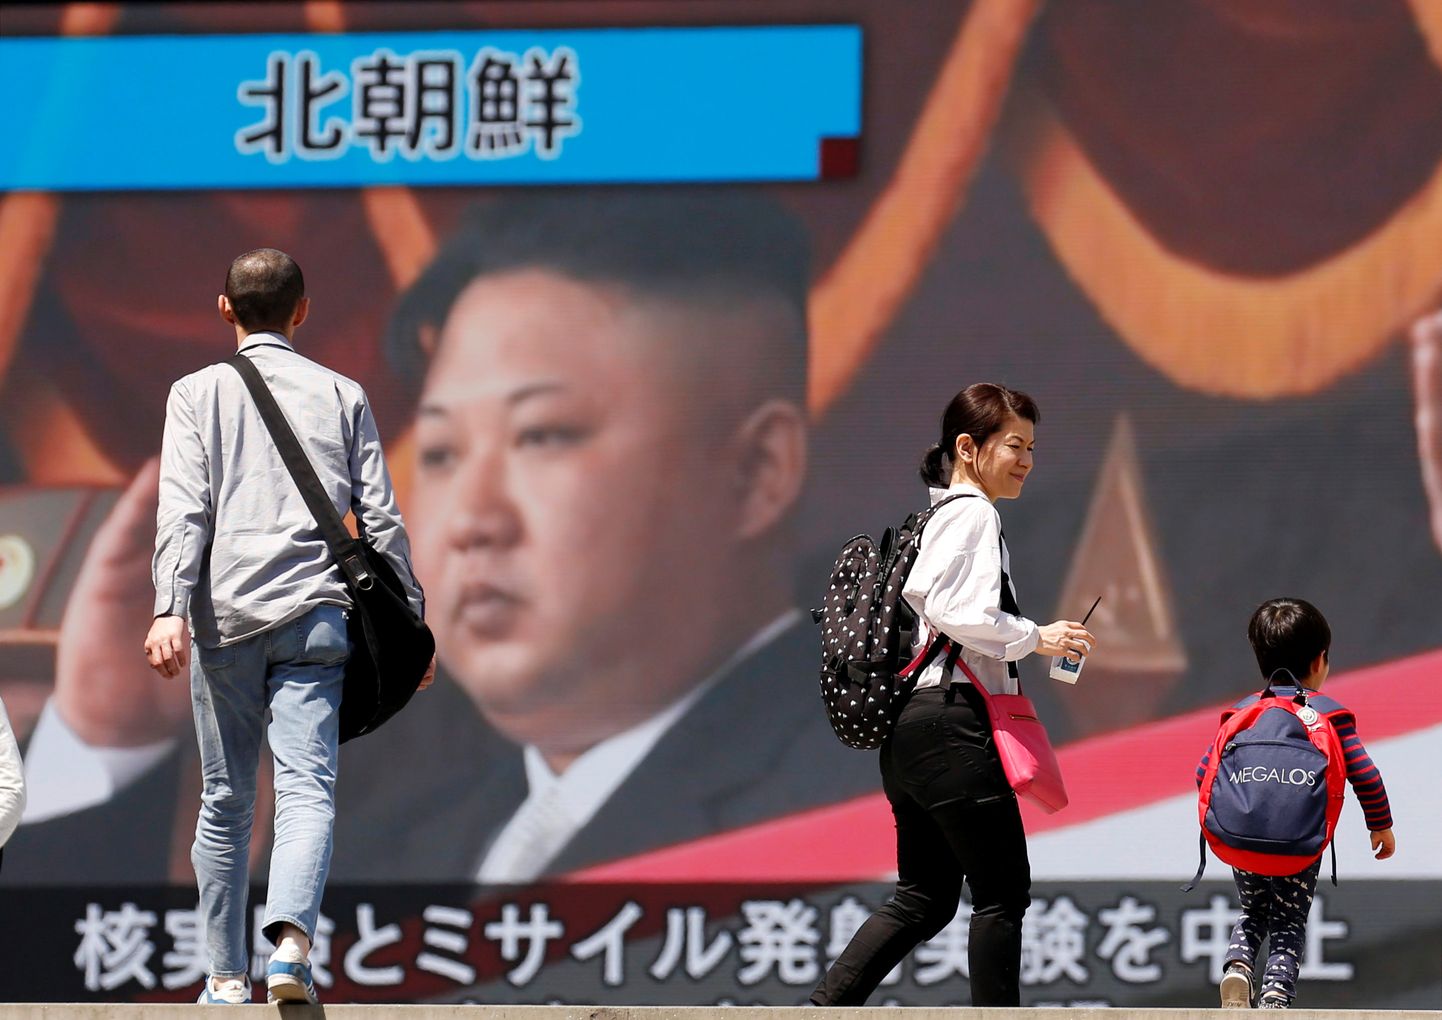 Hiina meedia kajastamas uudist Põhja-Koreast.